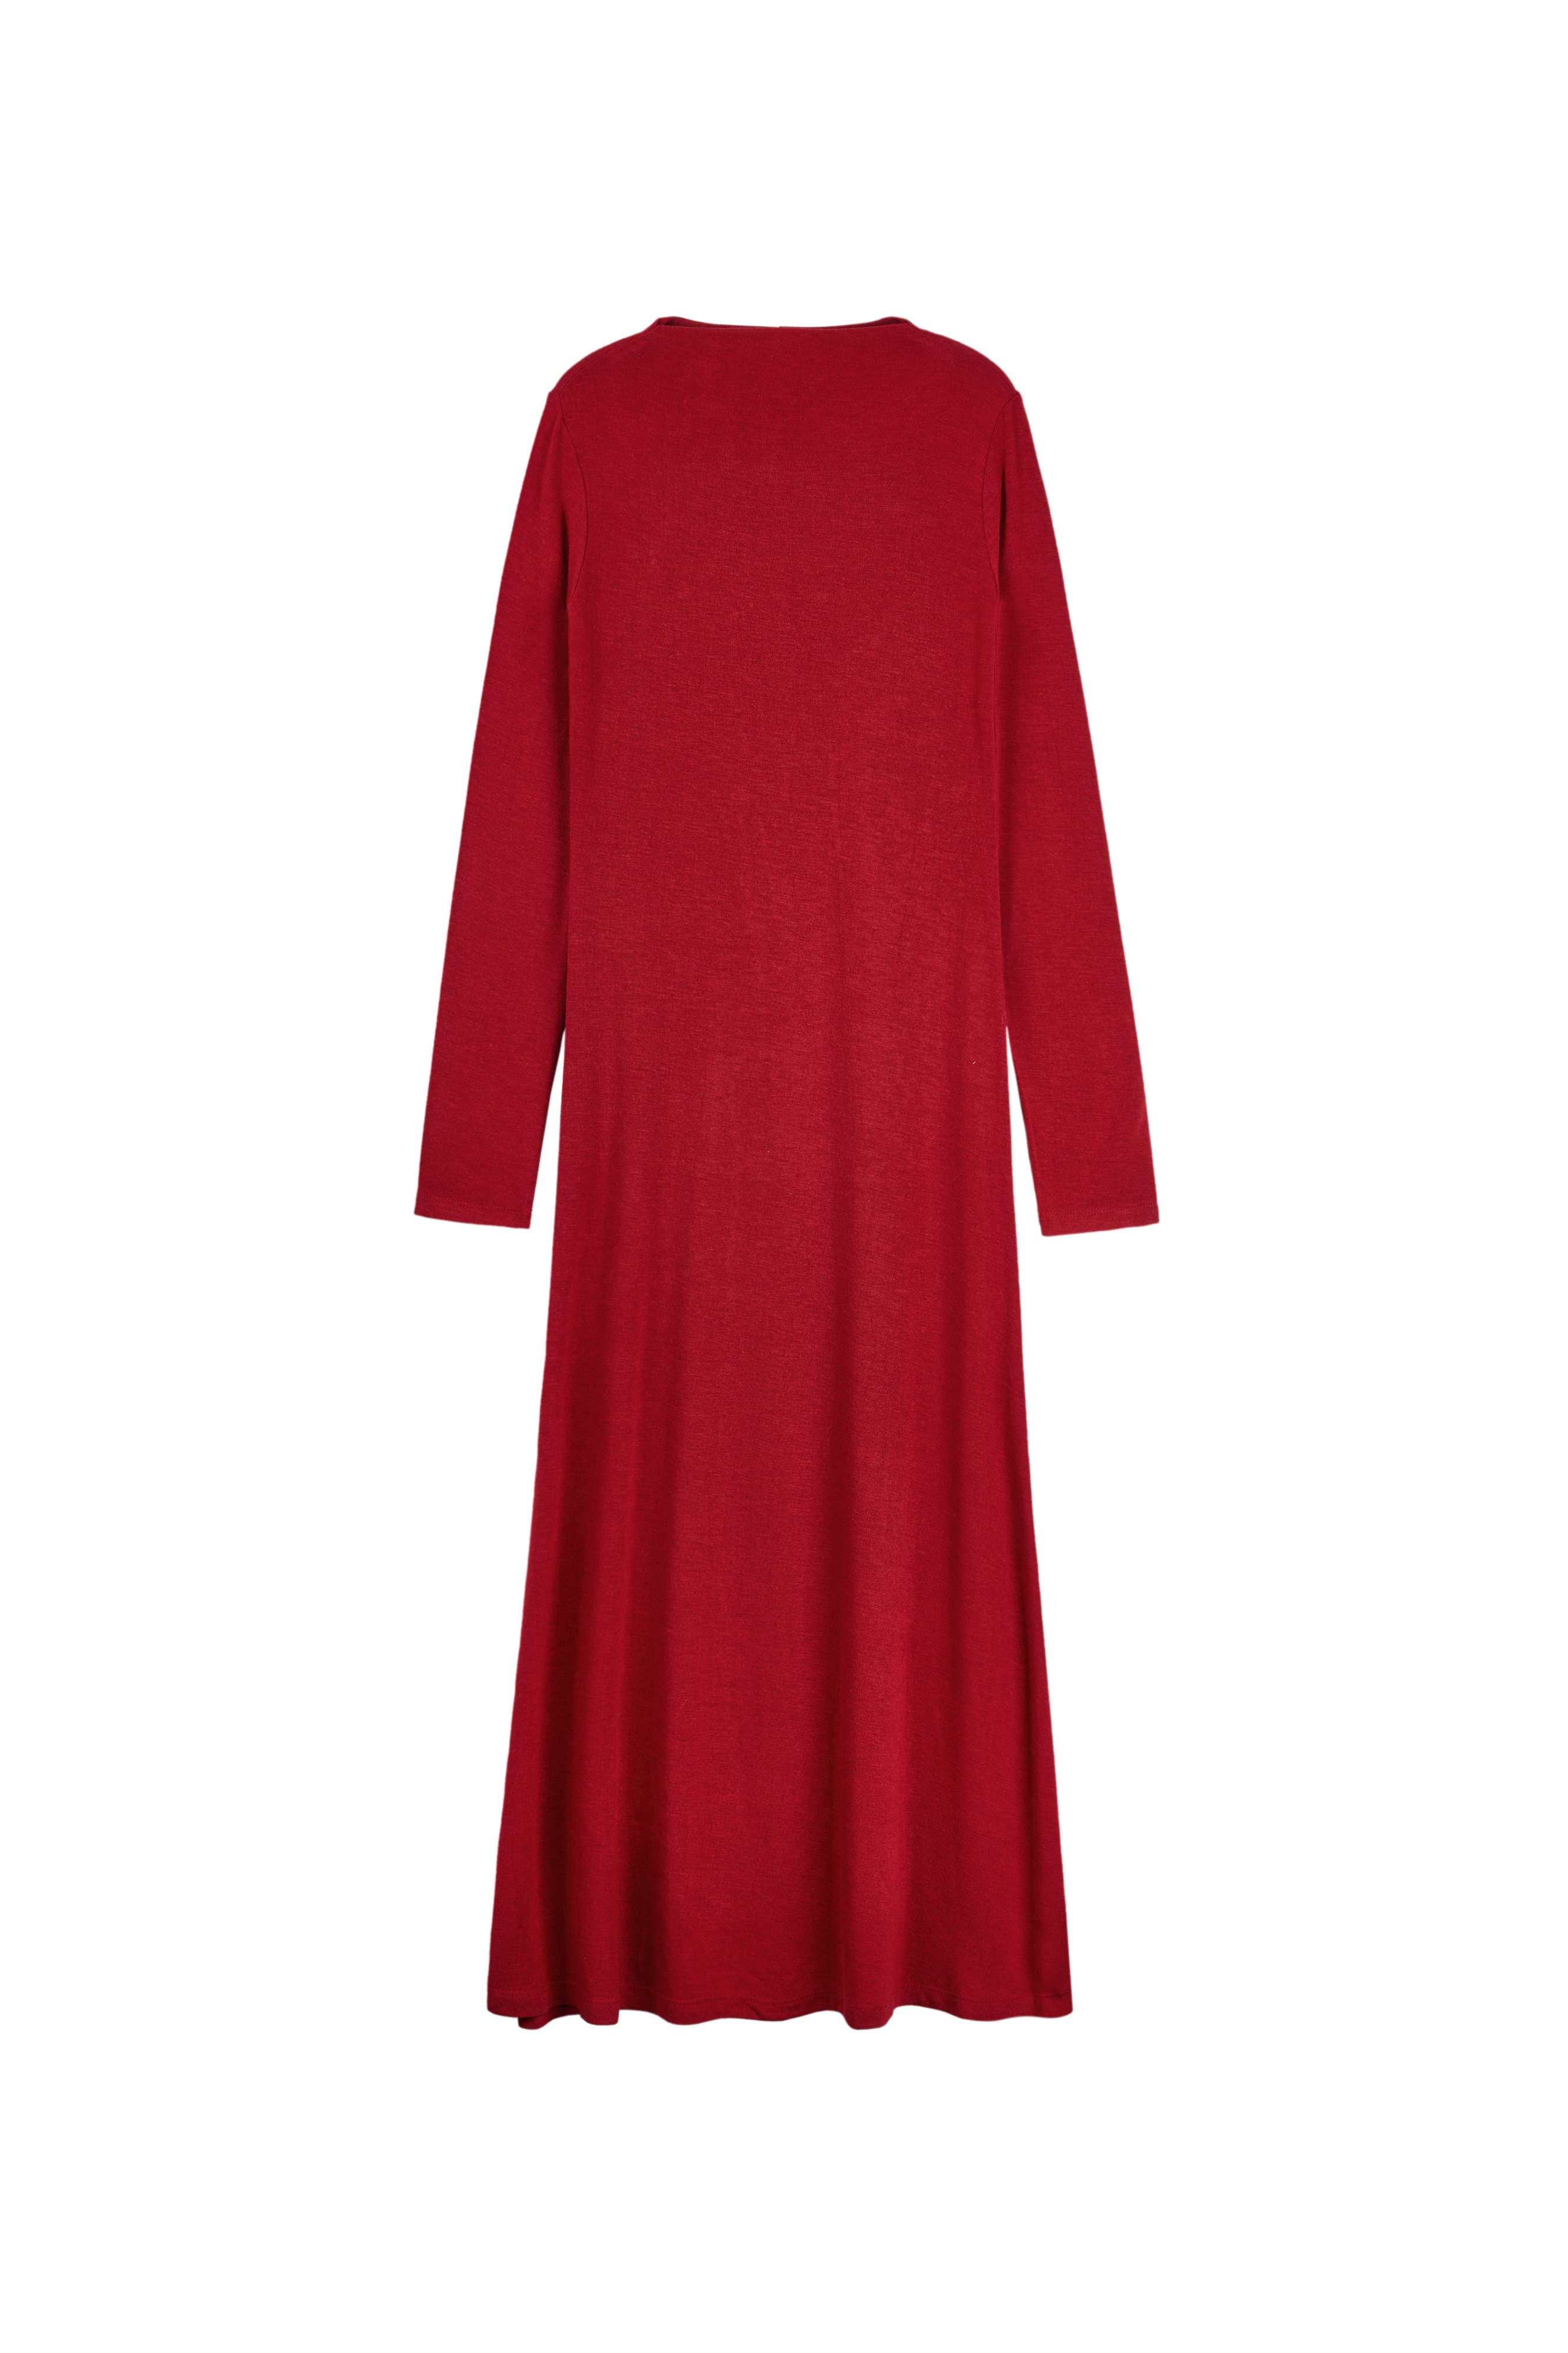 [예약배송 12/15] WINTER HOLIDAY DRESS (RED)